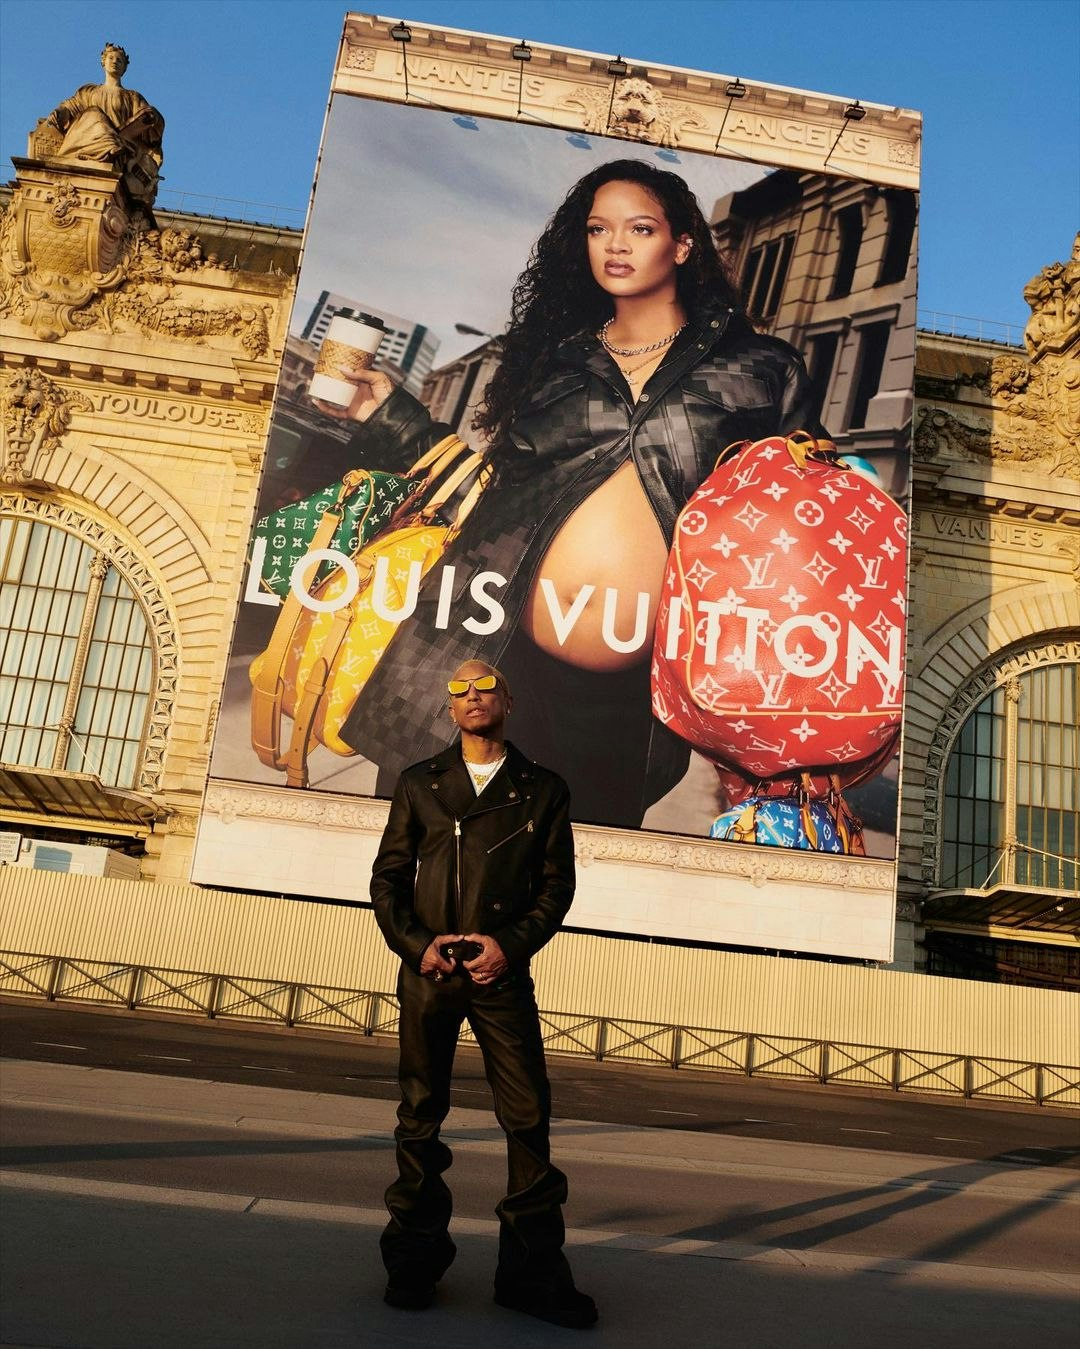 Louis Vuitton on X: Défilé Homme Printemps-Été 2024. Appuyez sur ❤️ pour  recevoir une invitation à regarder le premier défilé du Directeur Créatif  #PharrellWilliams en livestream depuis Paris, mardi 20 j